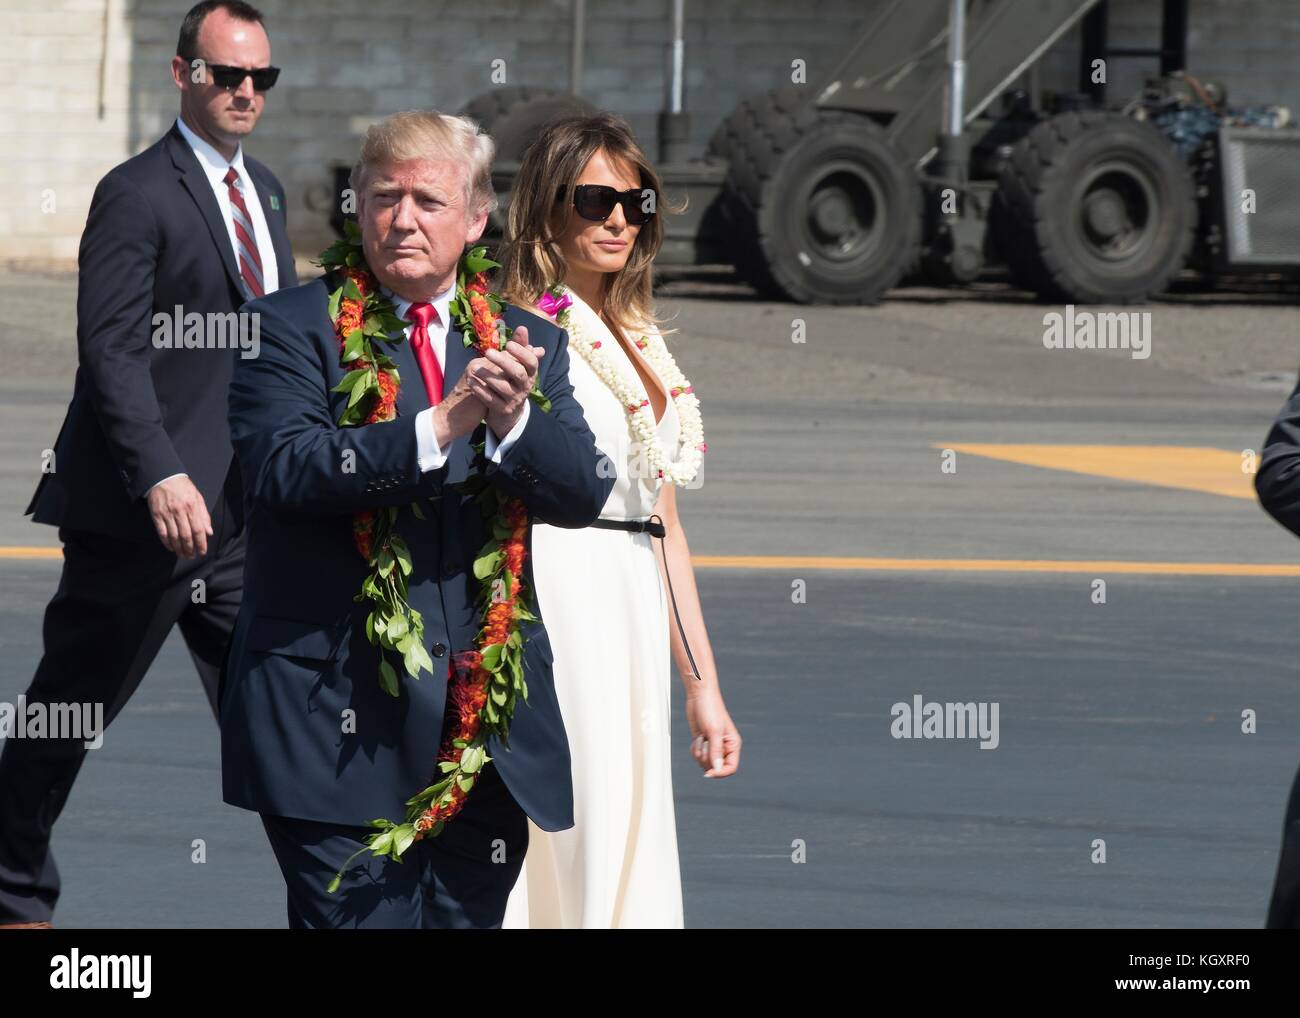 El presidente de Estados Unidos, Donald Trump (izquierda) y la primera dama de Estados Unidos, melania trump llegan a la base común de pearl harbor hickam noviembre 3, 2017 en Pearl Harbor, Hawai. (Foto por corwin colbert via planetpix) Foto de stock